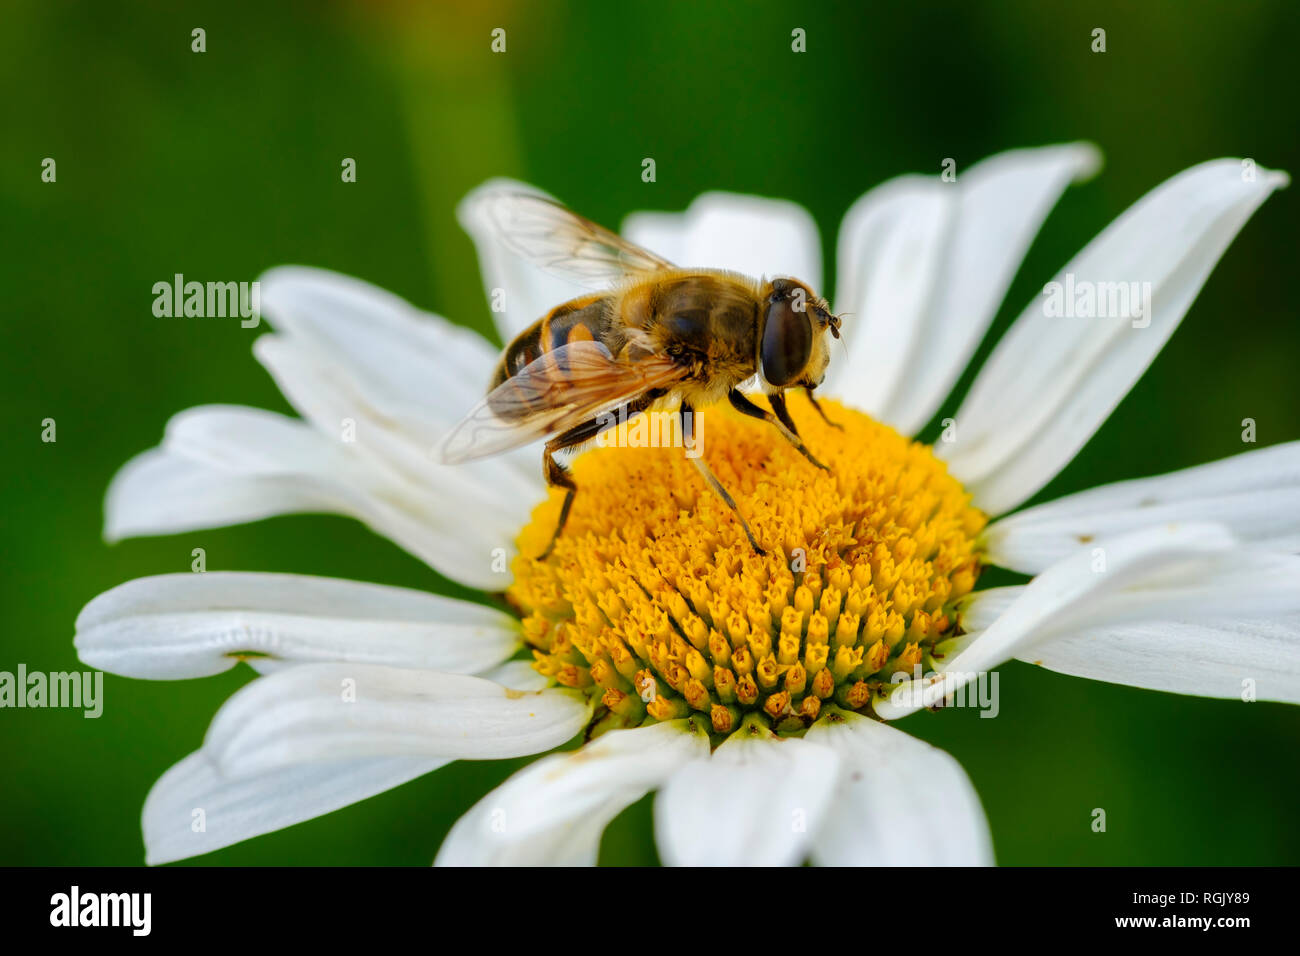 Albania, Valbona-National Park, hoverfly, Syrphus sp., en flor Foto de stock